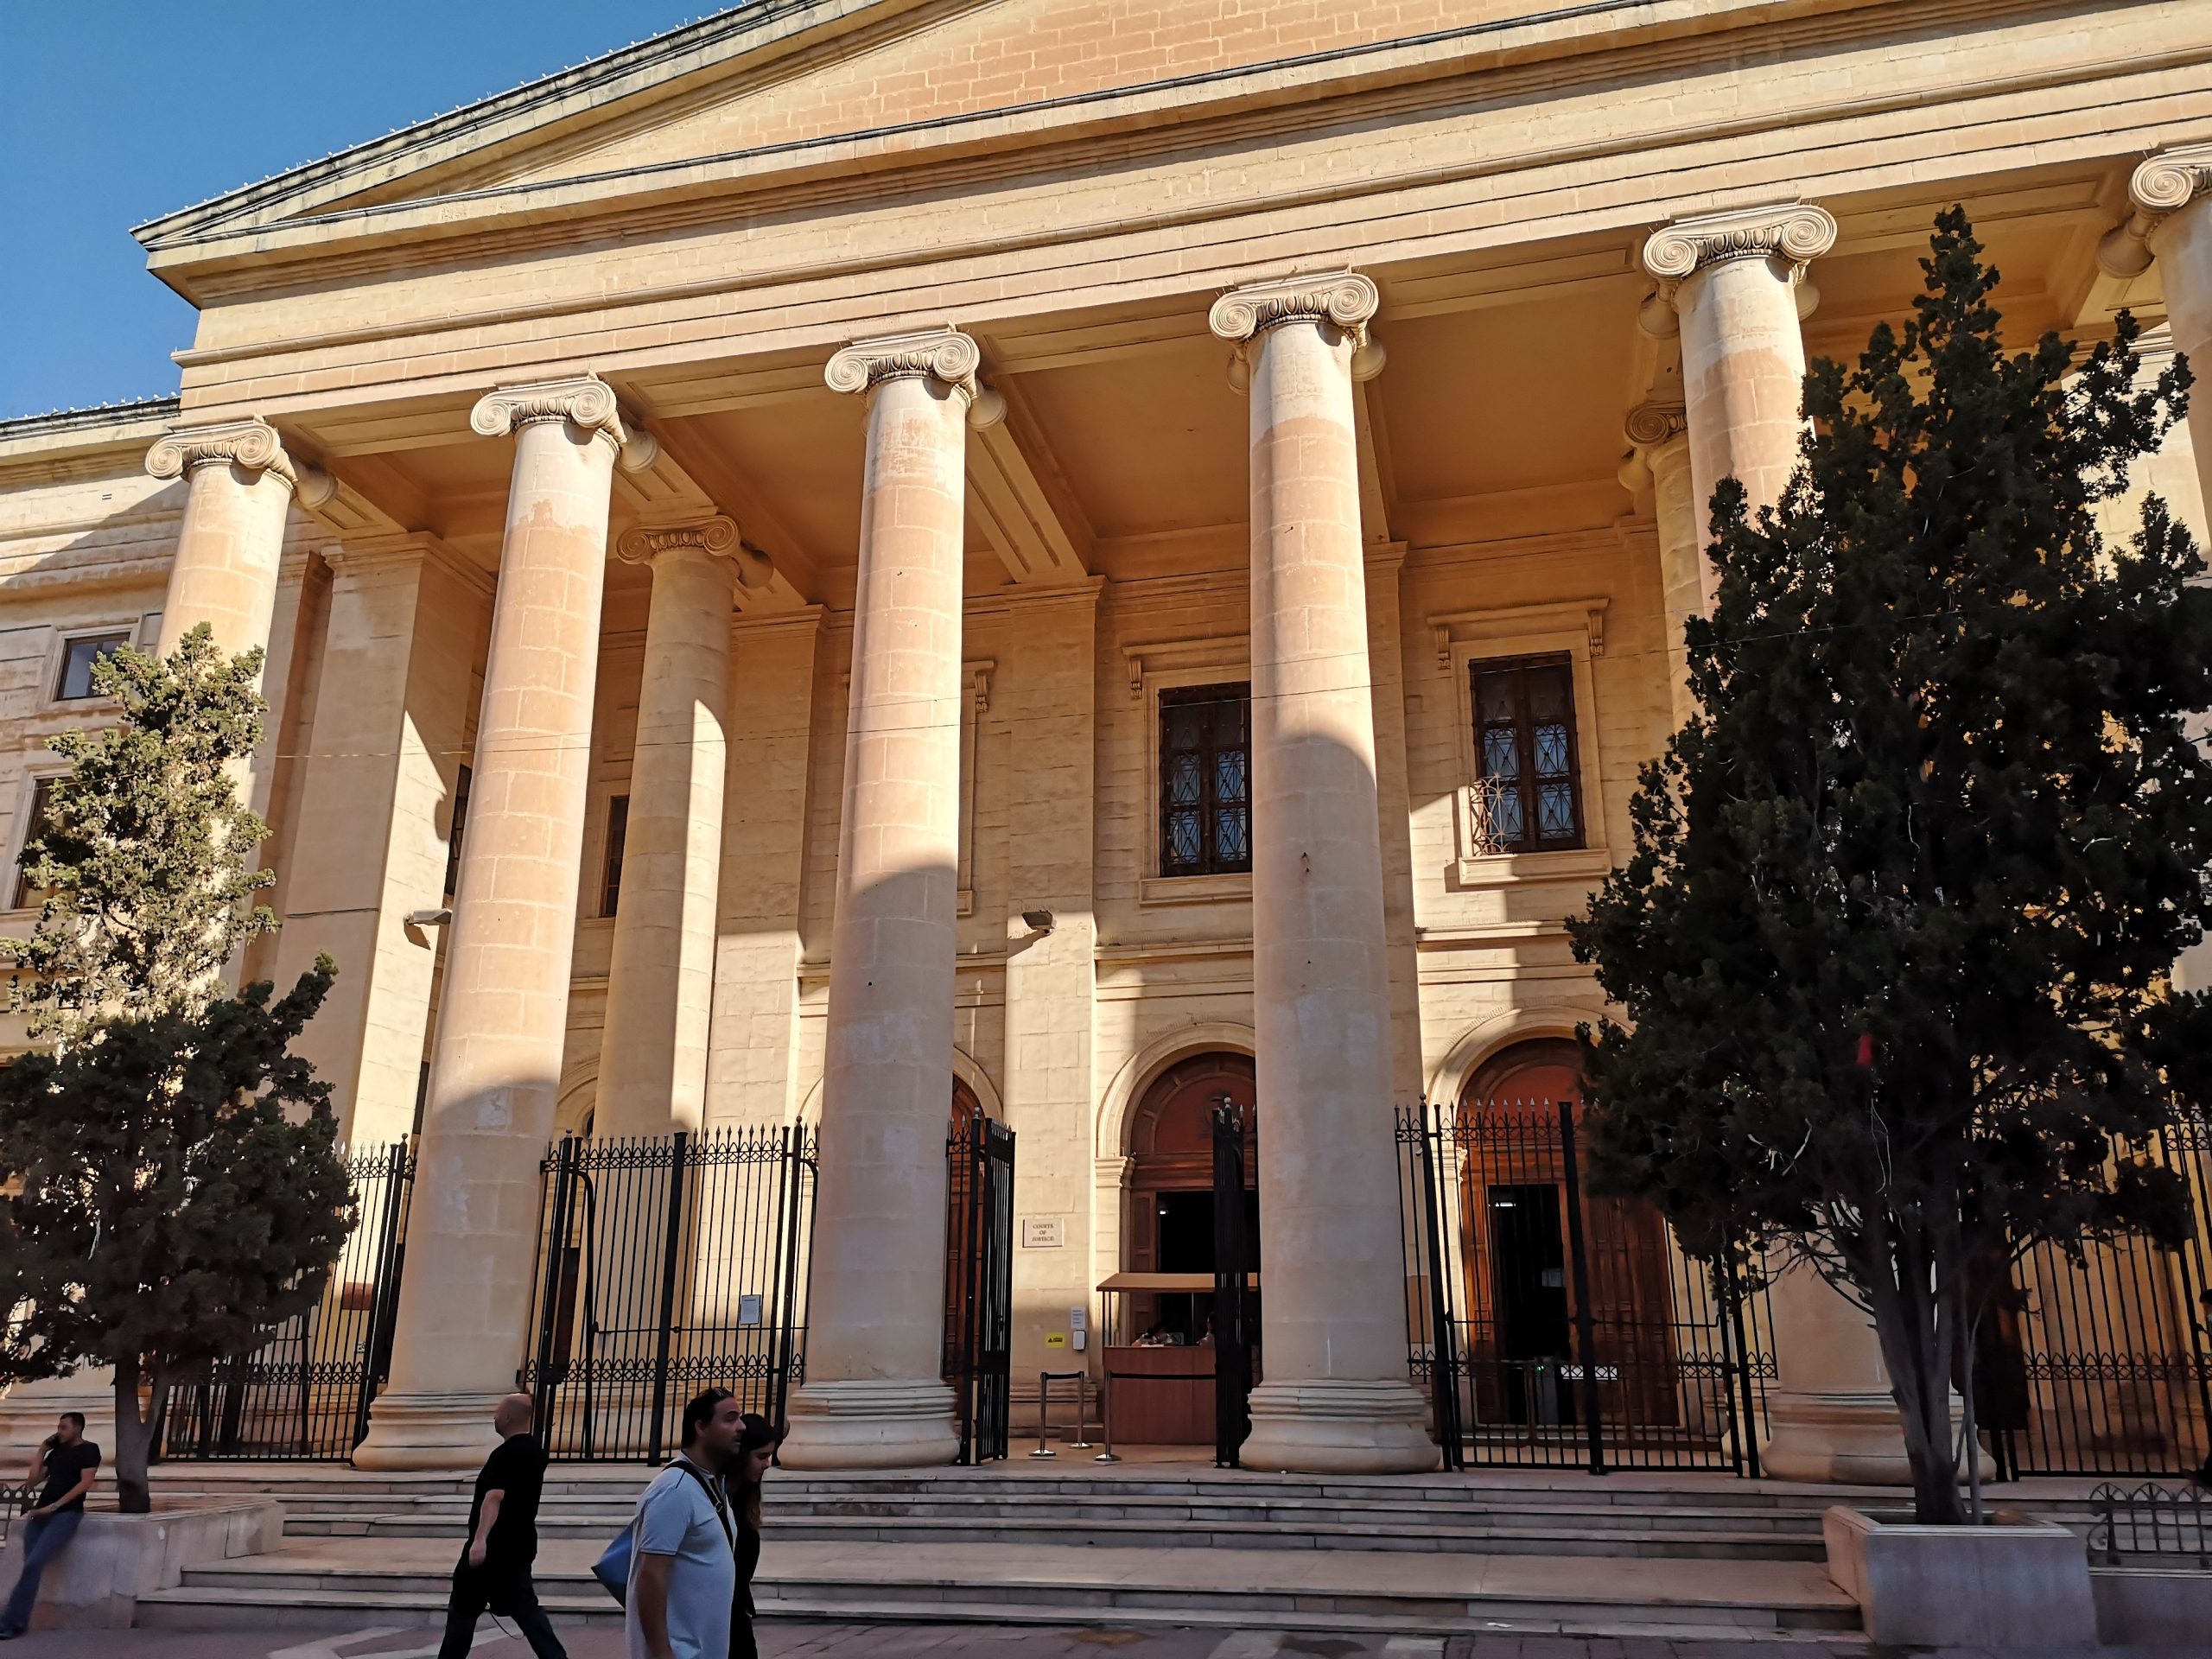 Courthouse in Valleta, Malta